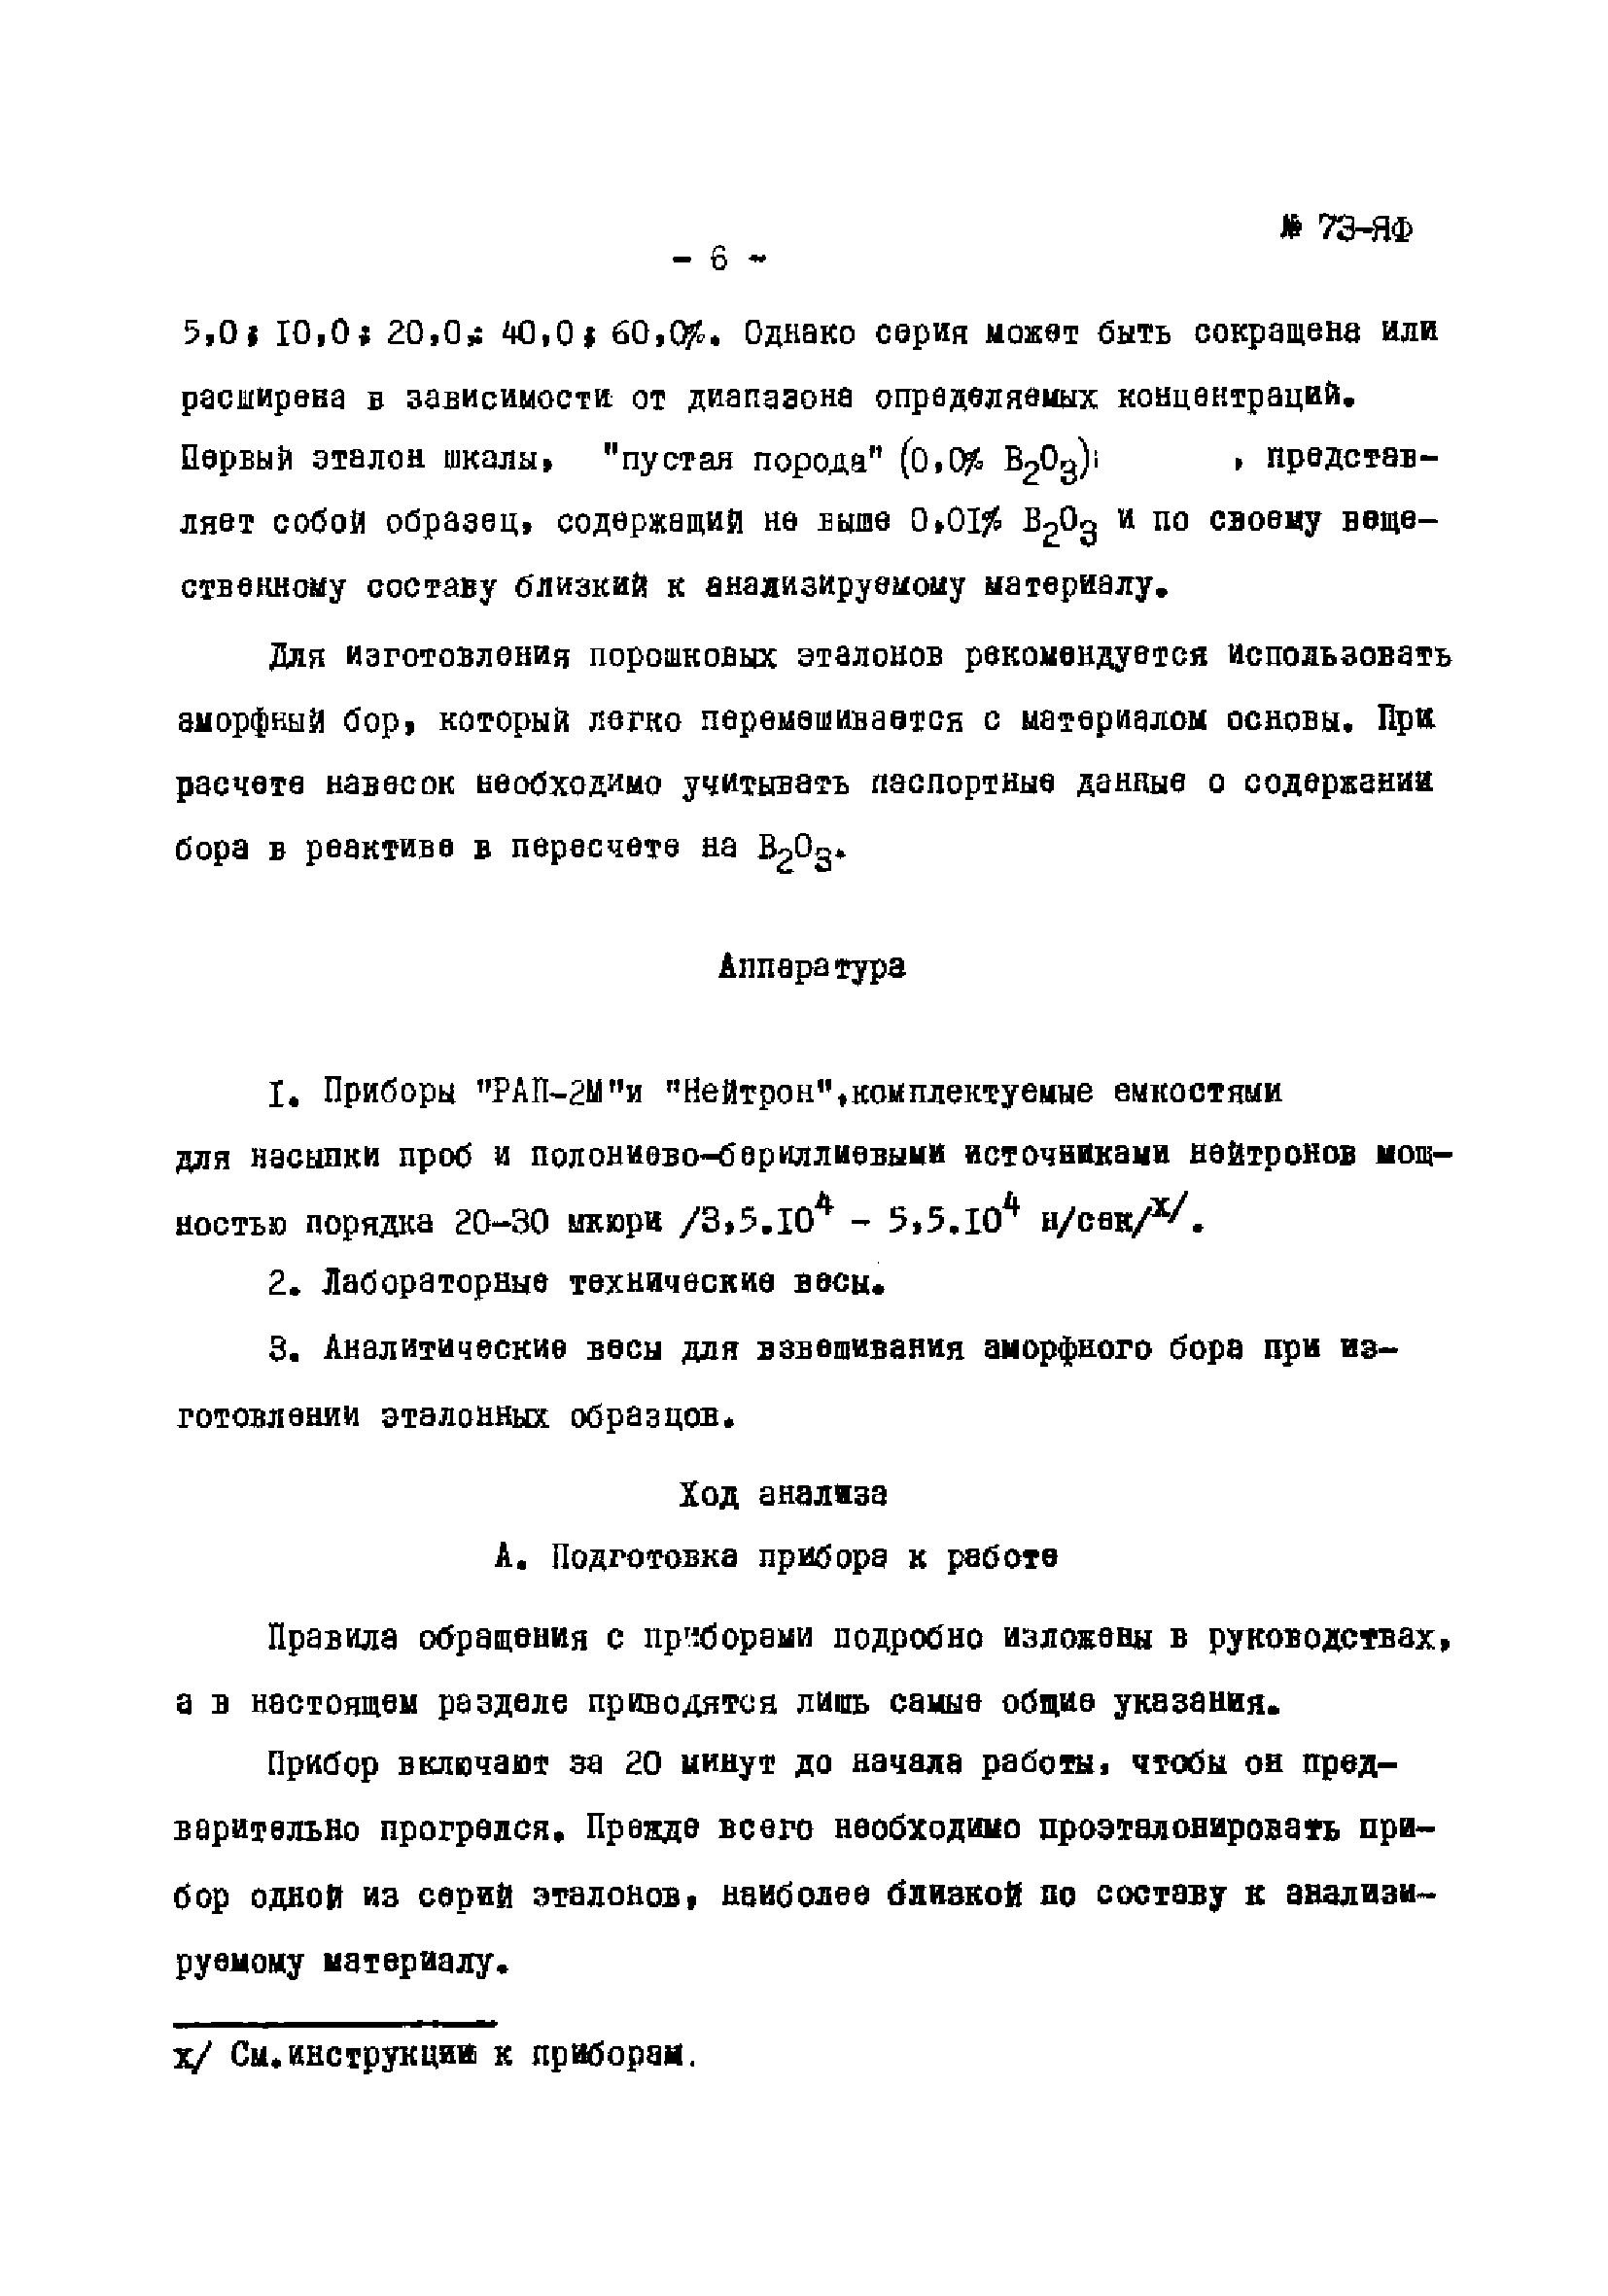 Инструкция НСАМ 73-ЯФ